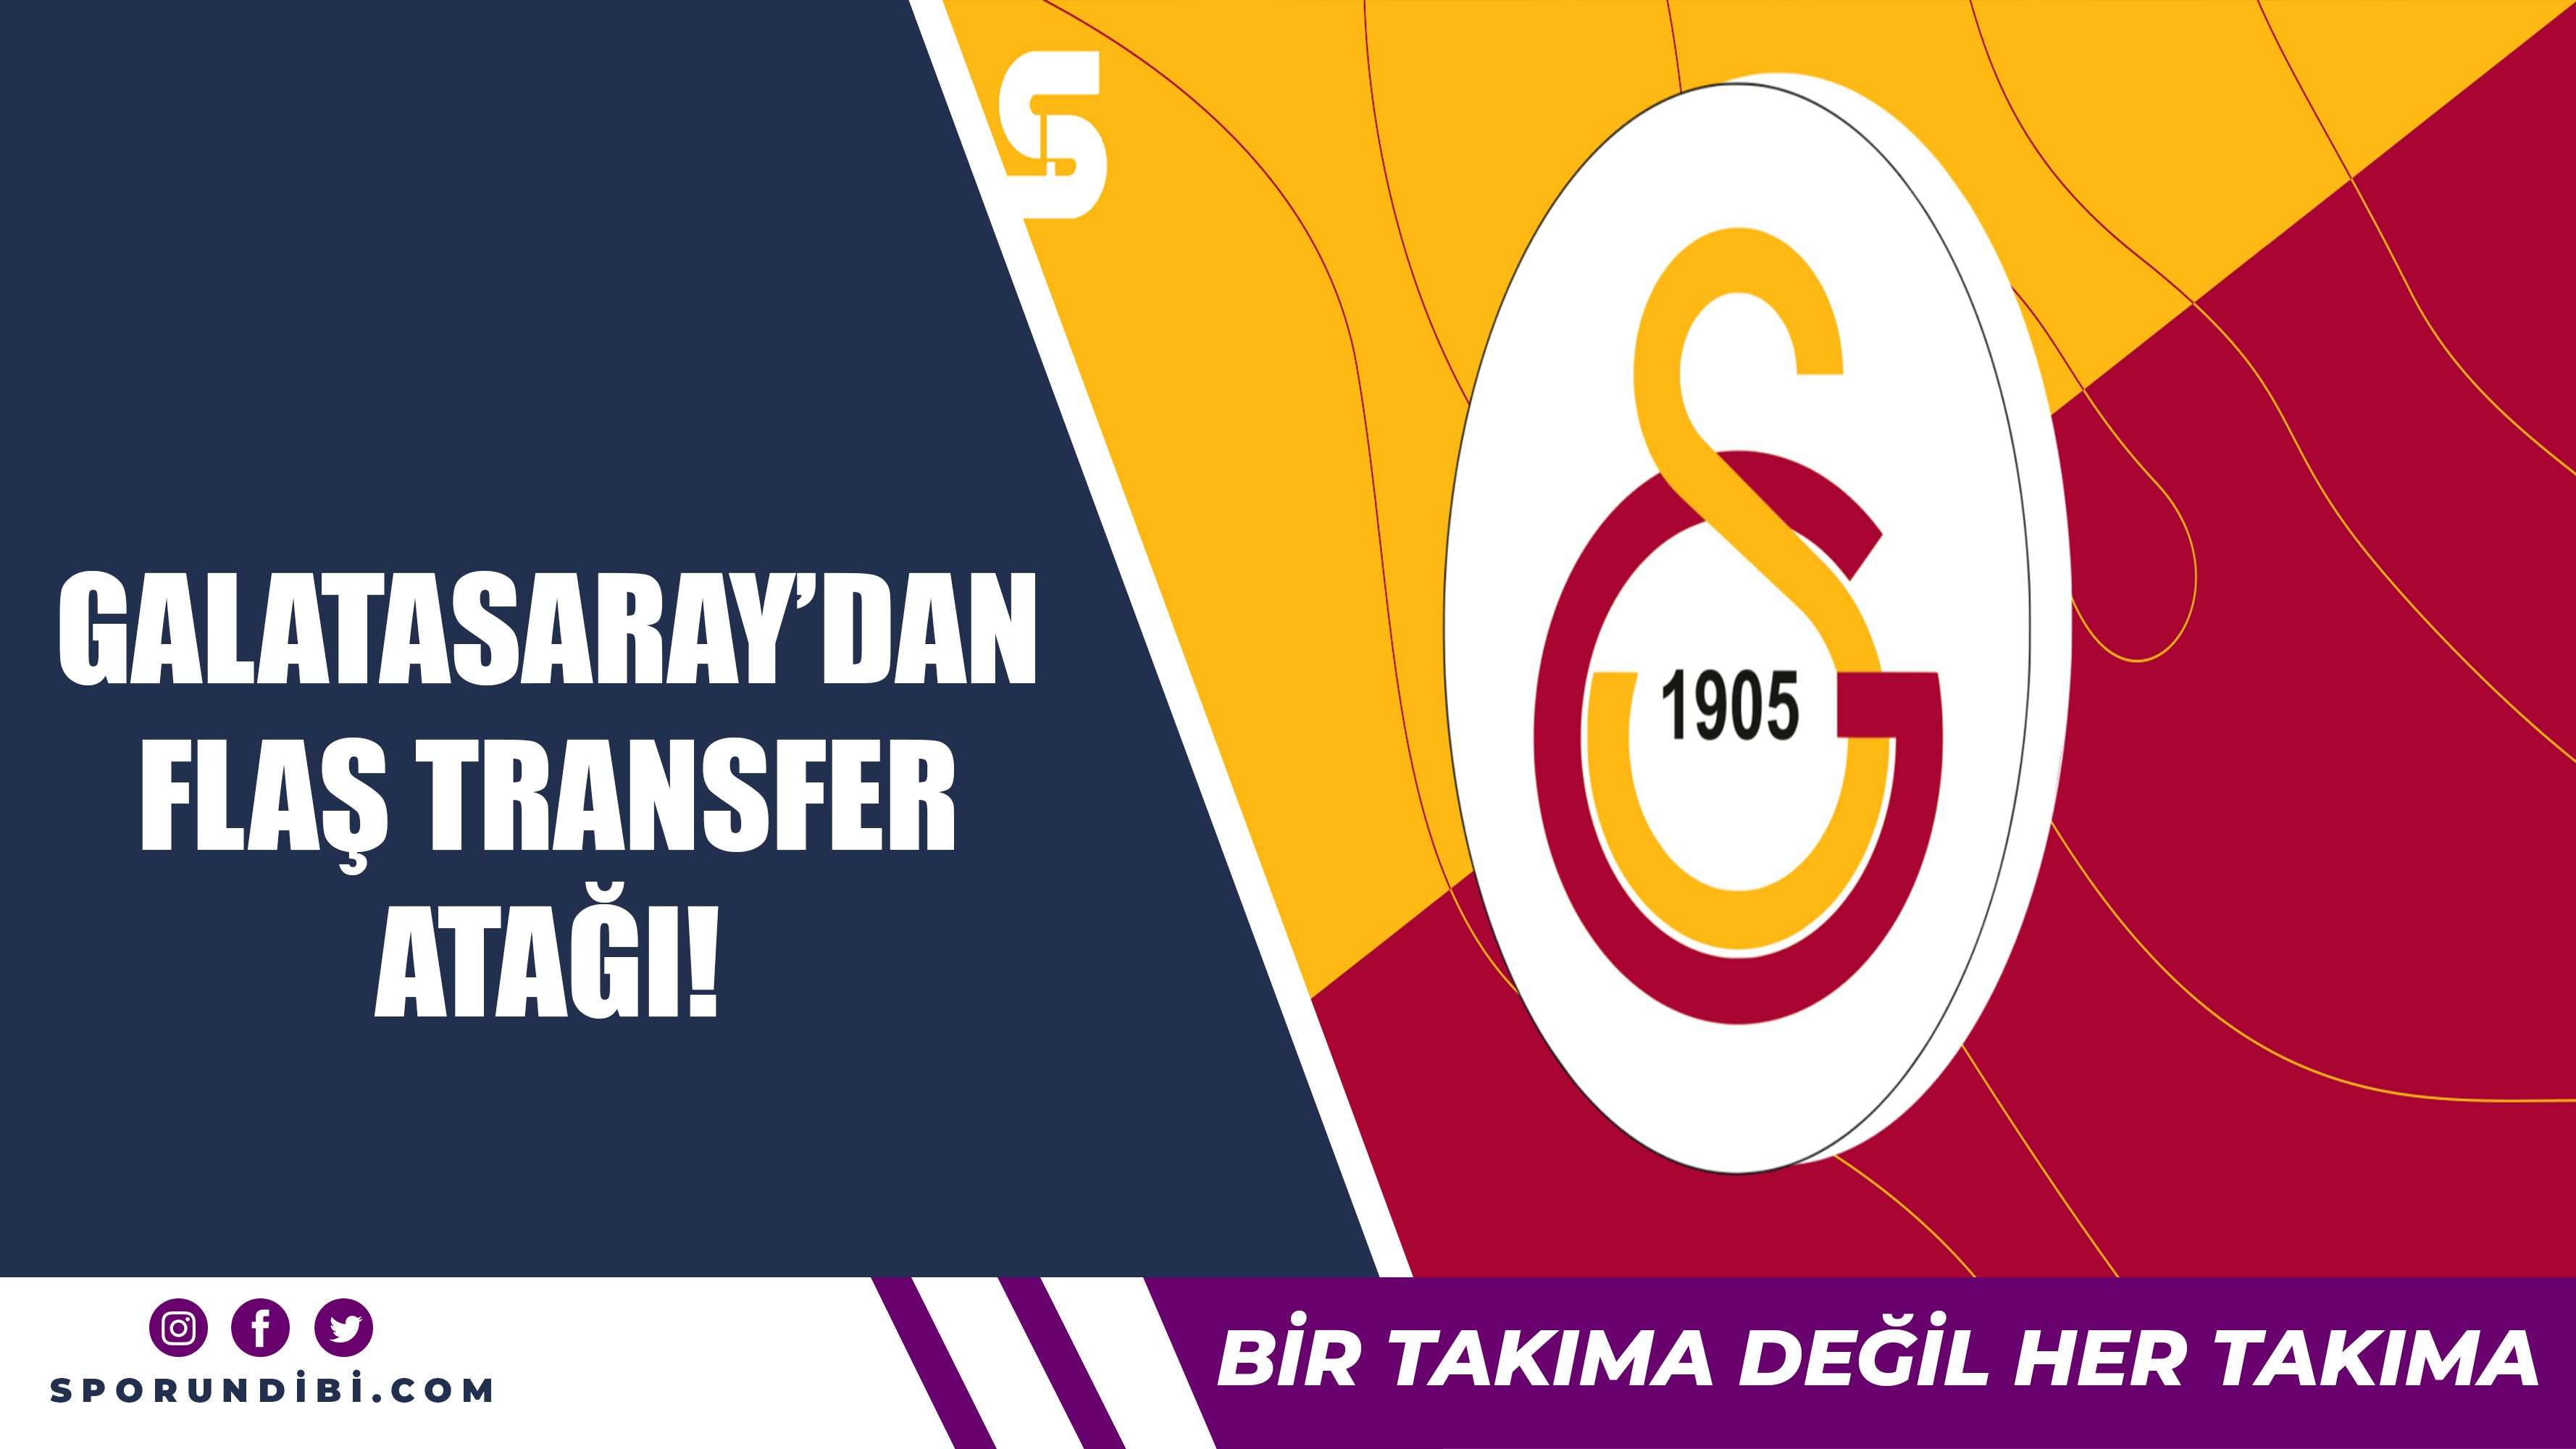 Galatasaray'dan flaş transfer atağı!